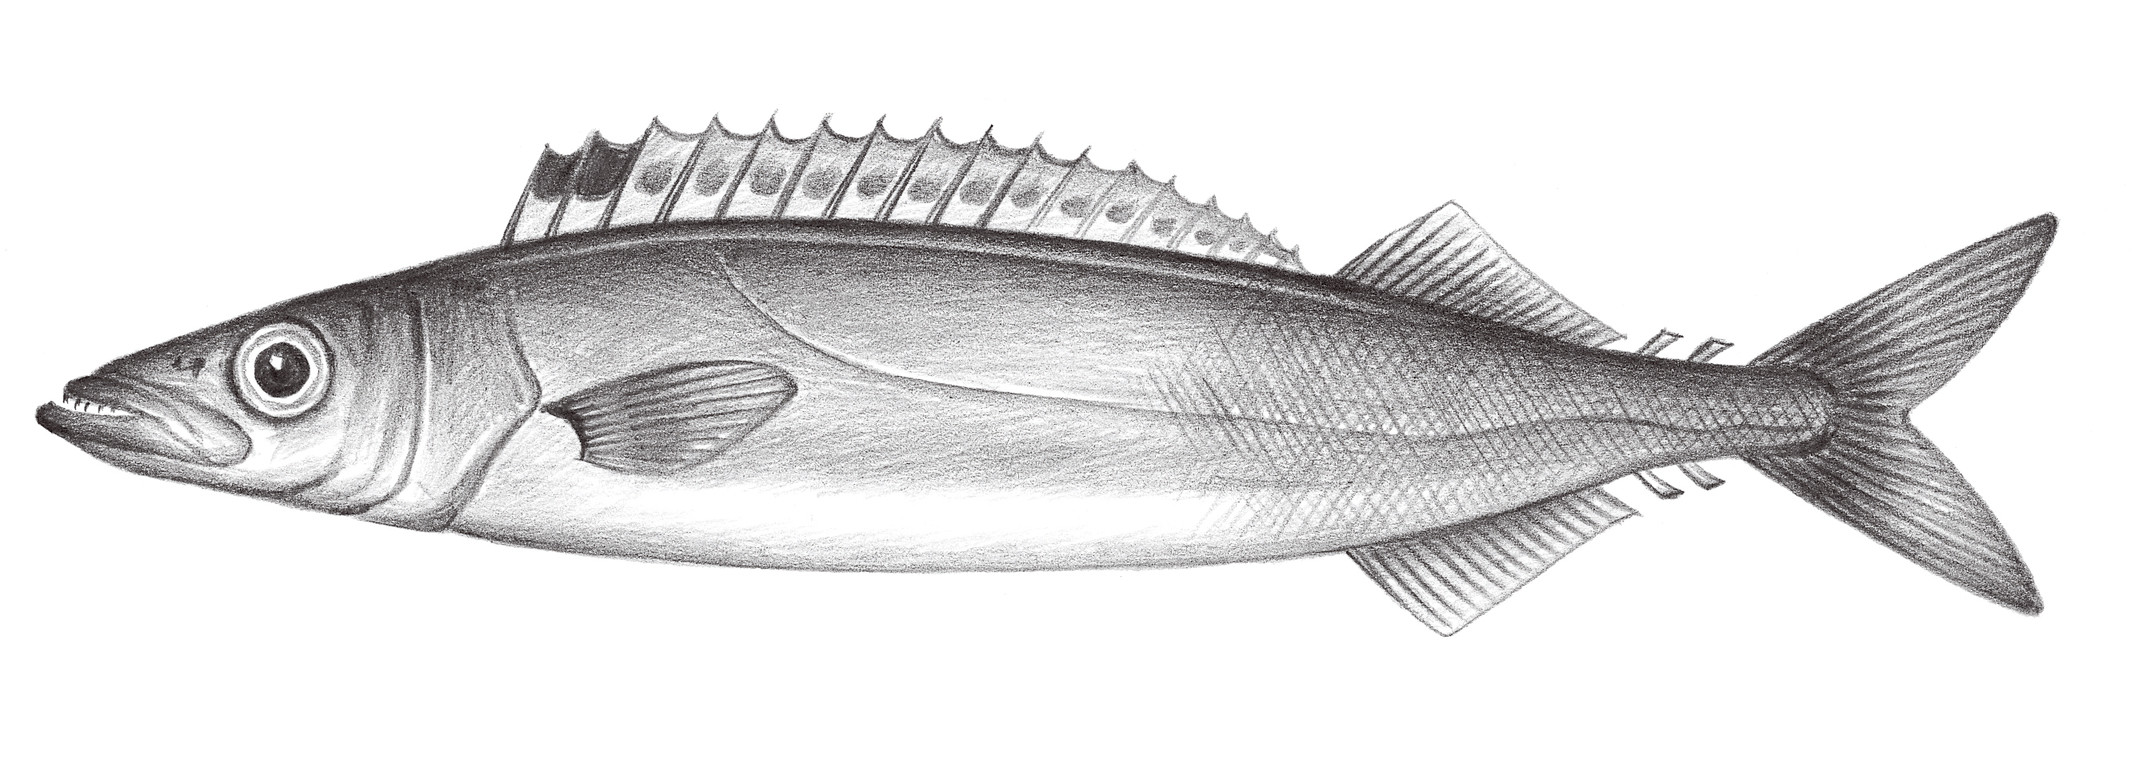 2332.	短蛇鯖 Rexea prometheoides (Bleeker, 1856)